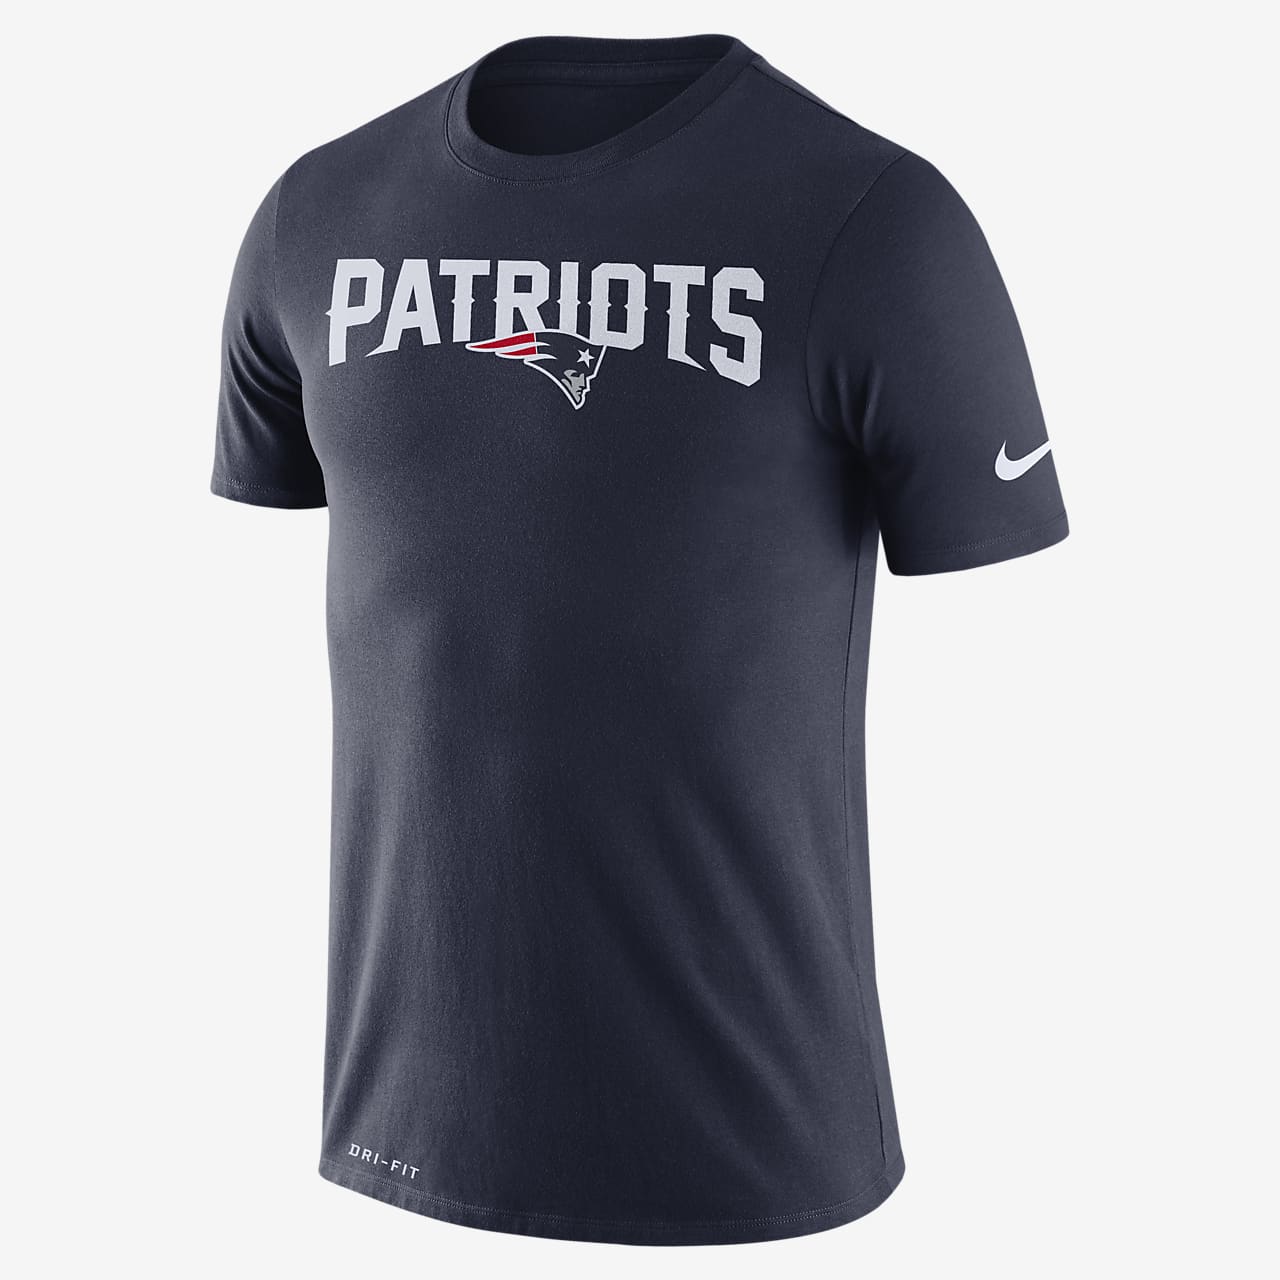 patriots dri fit shirt